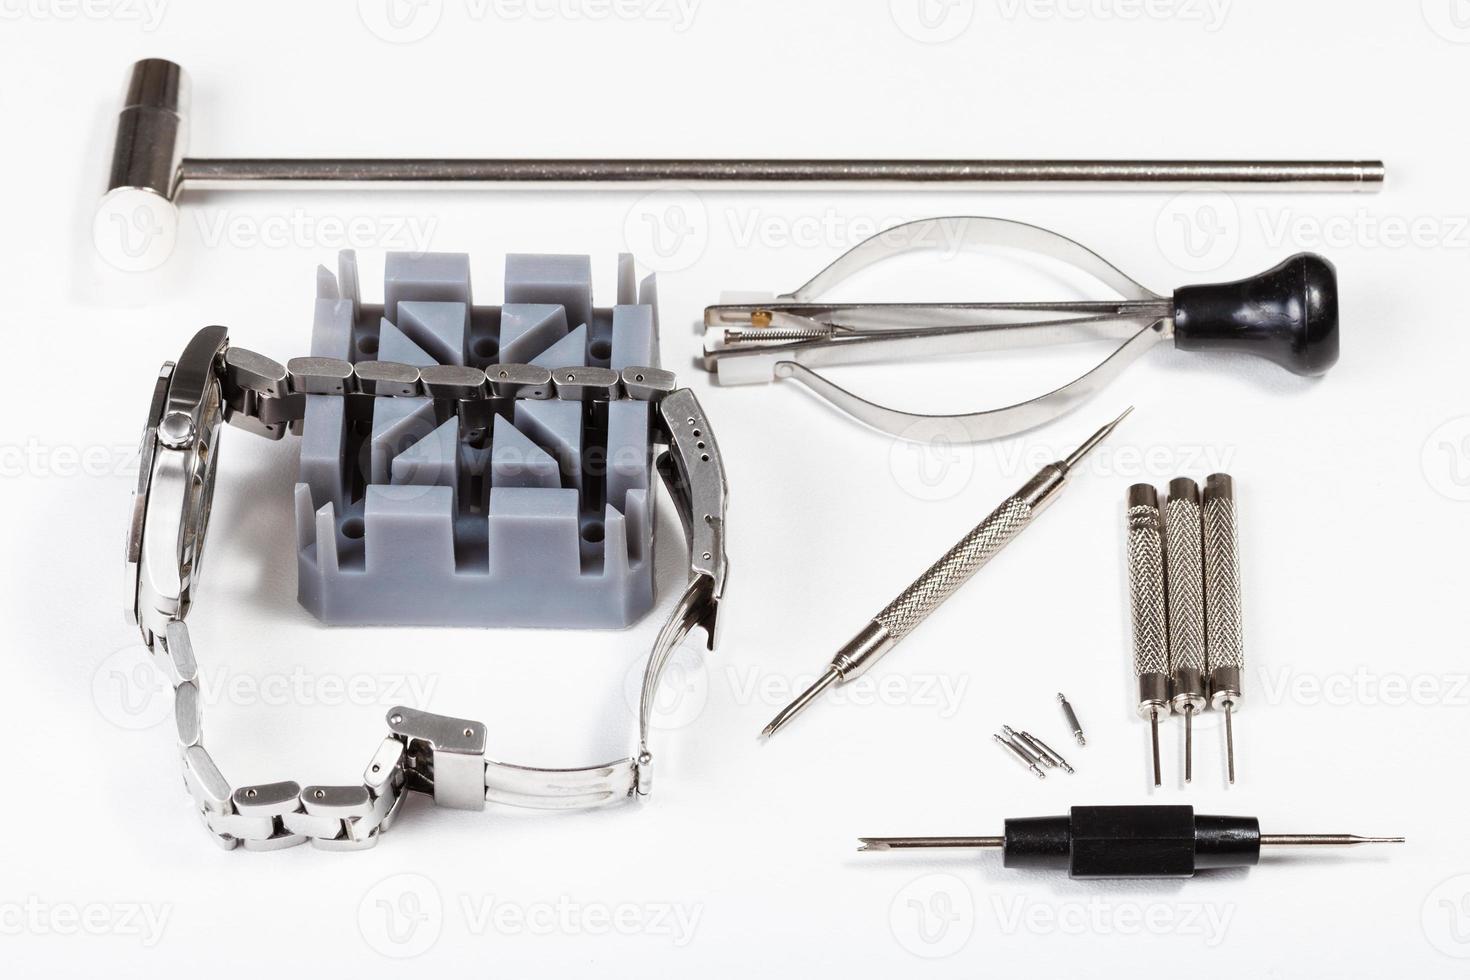 kit de herramientas de reparación relojes para ajustar la correa de reloj 12247038 de stock en